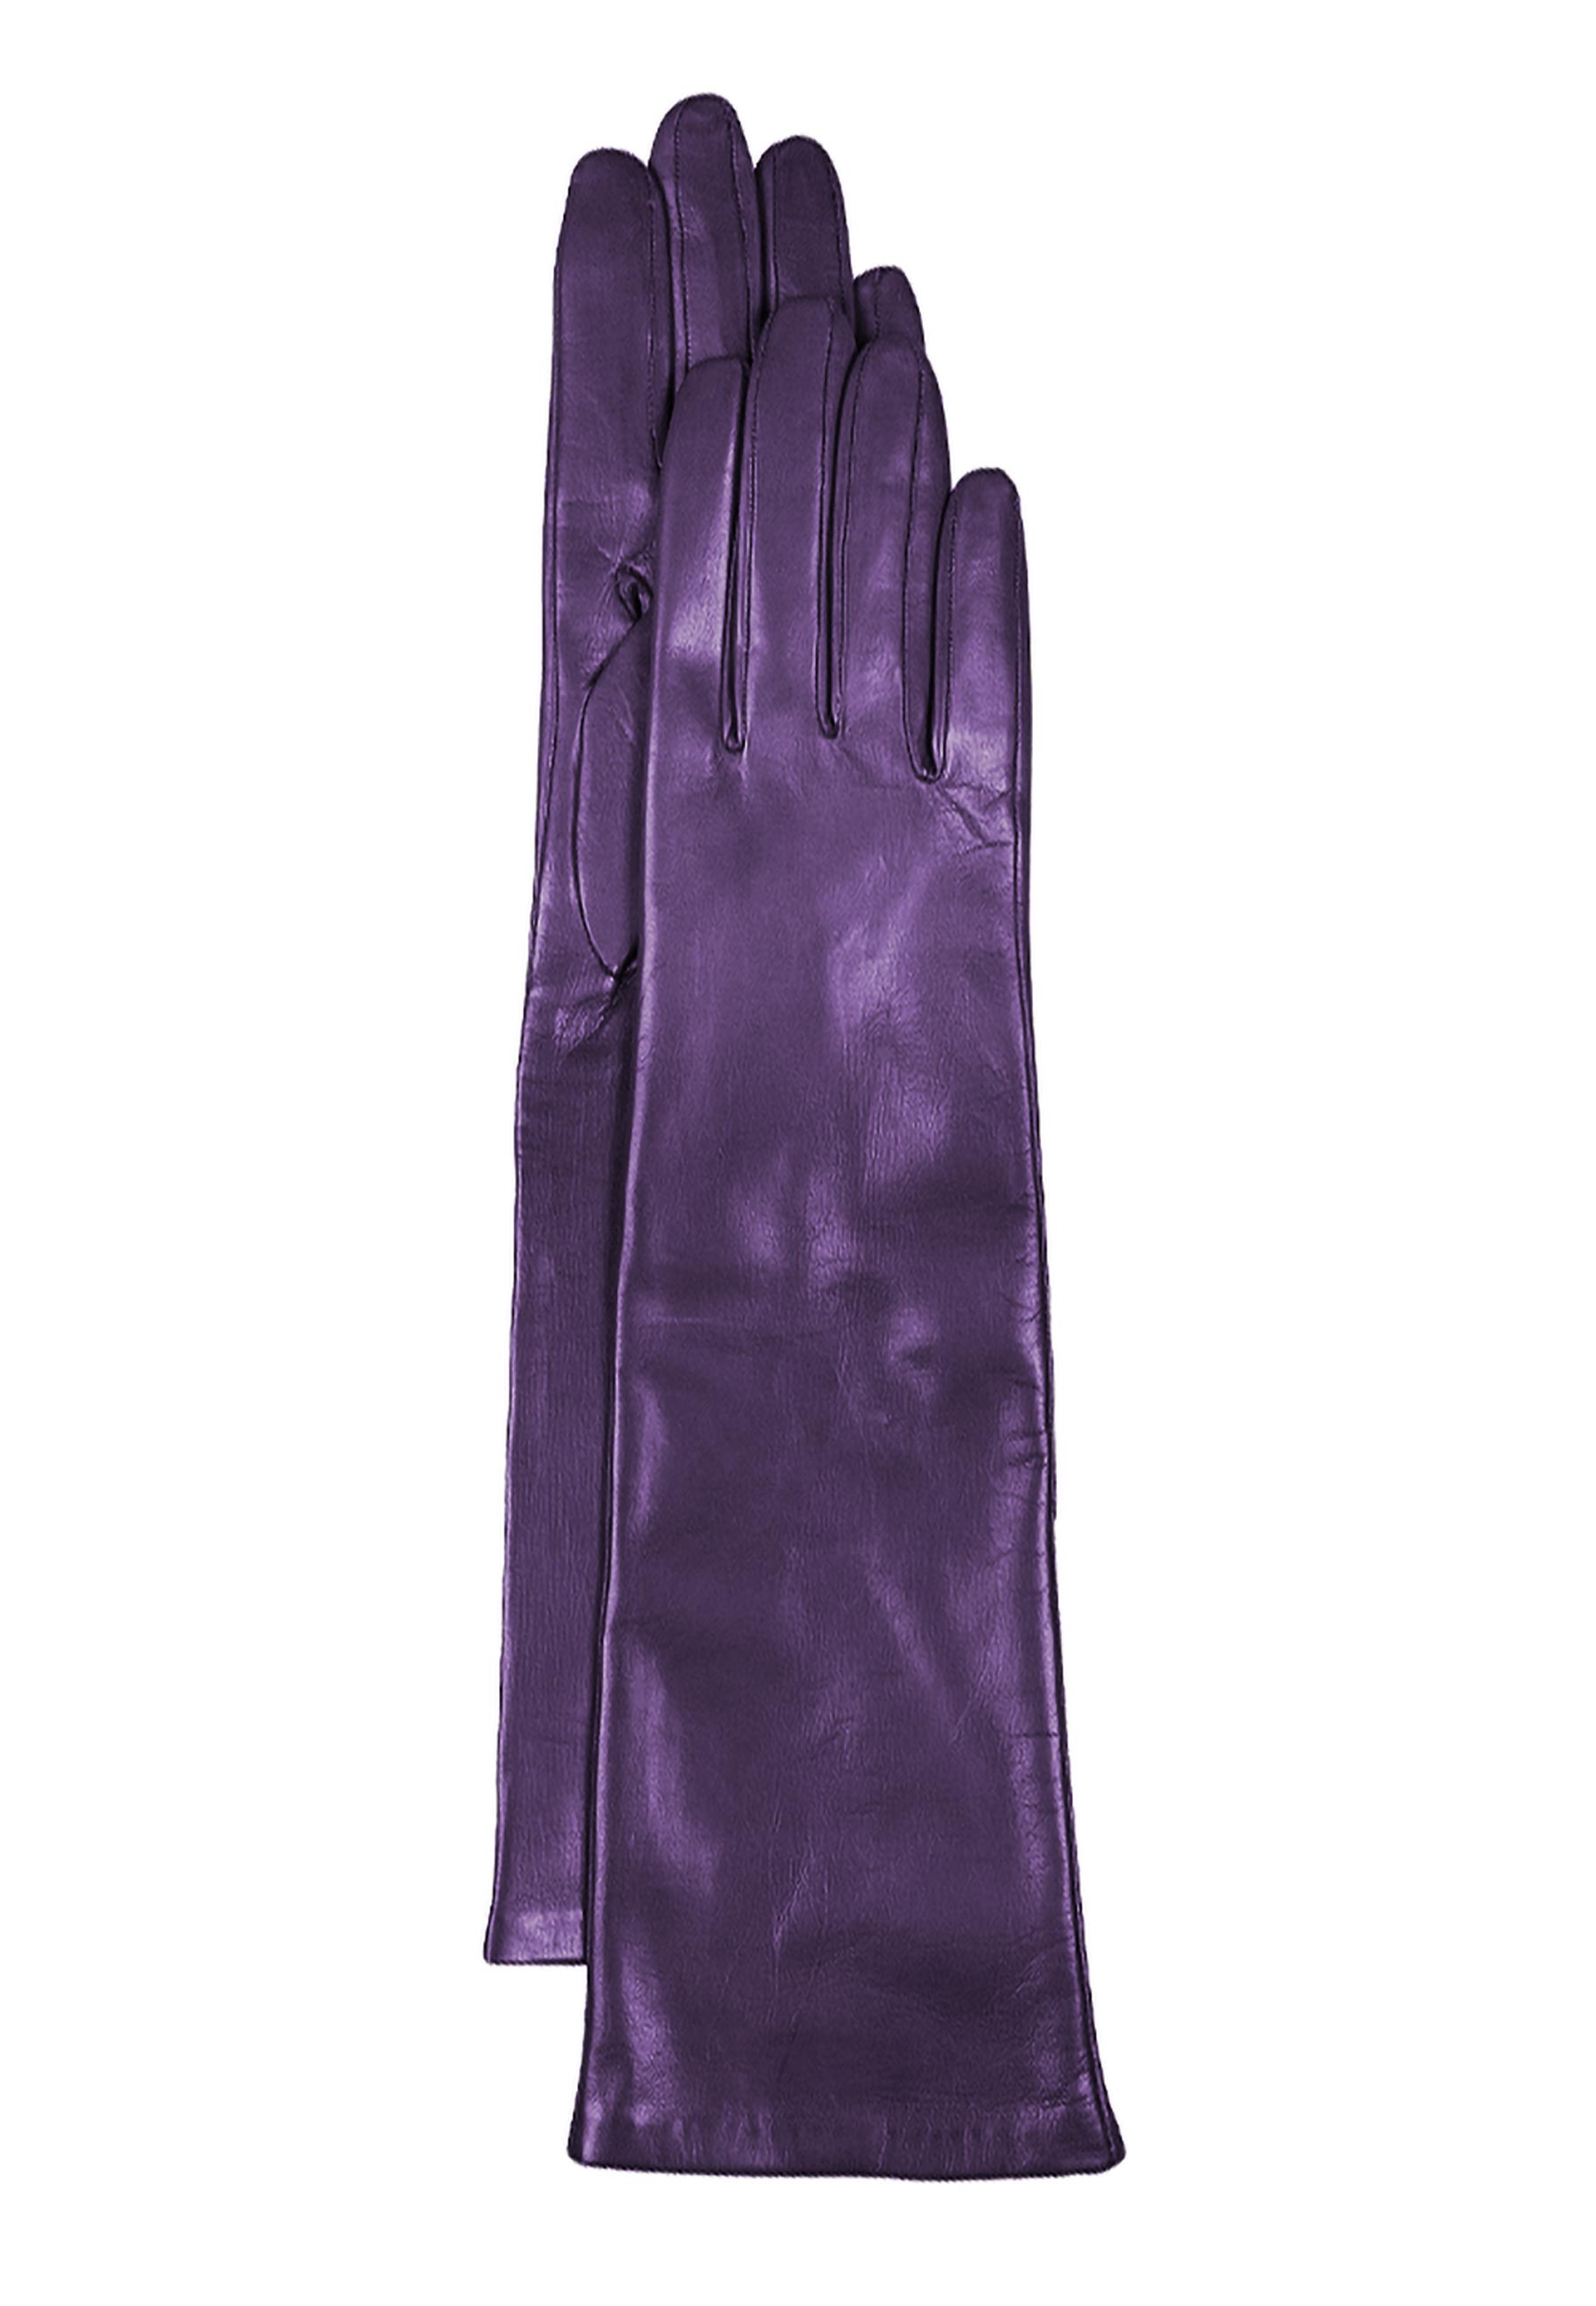 Lange Handschuhe für Damen | mygretchen.com von aus anilin-Lammnappa Mygretchen